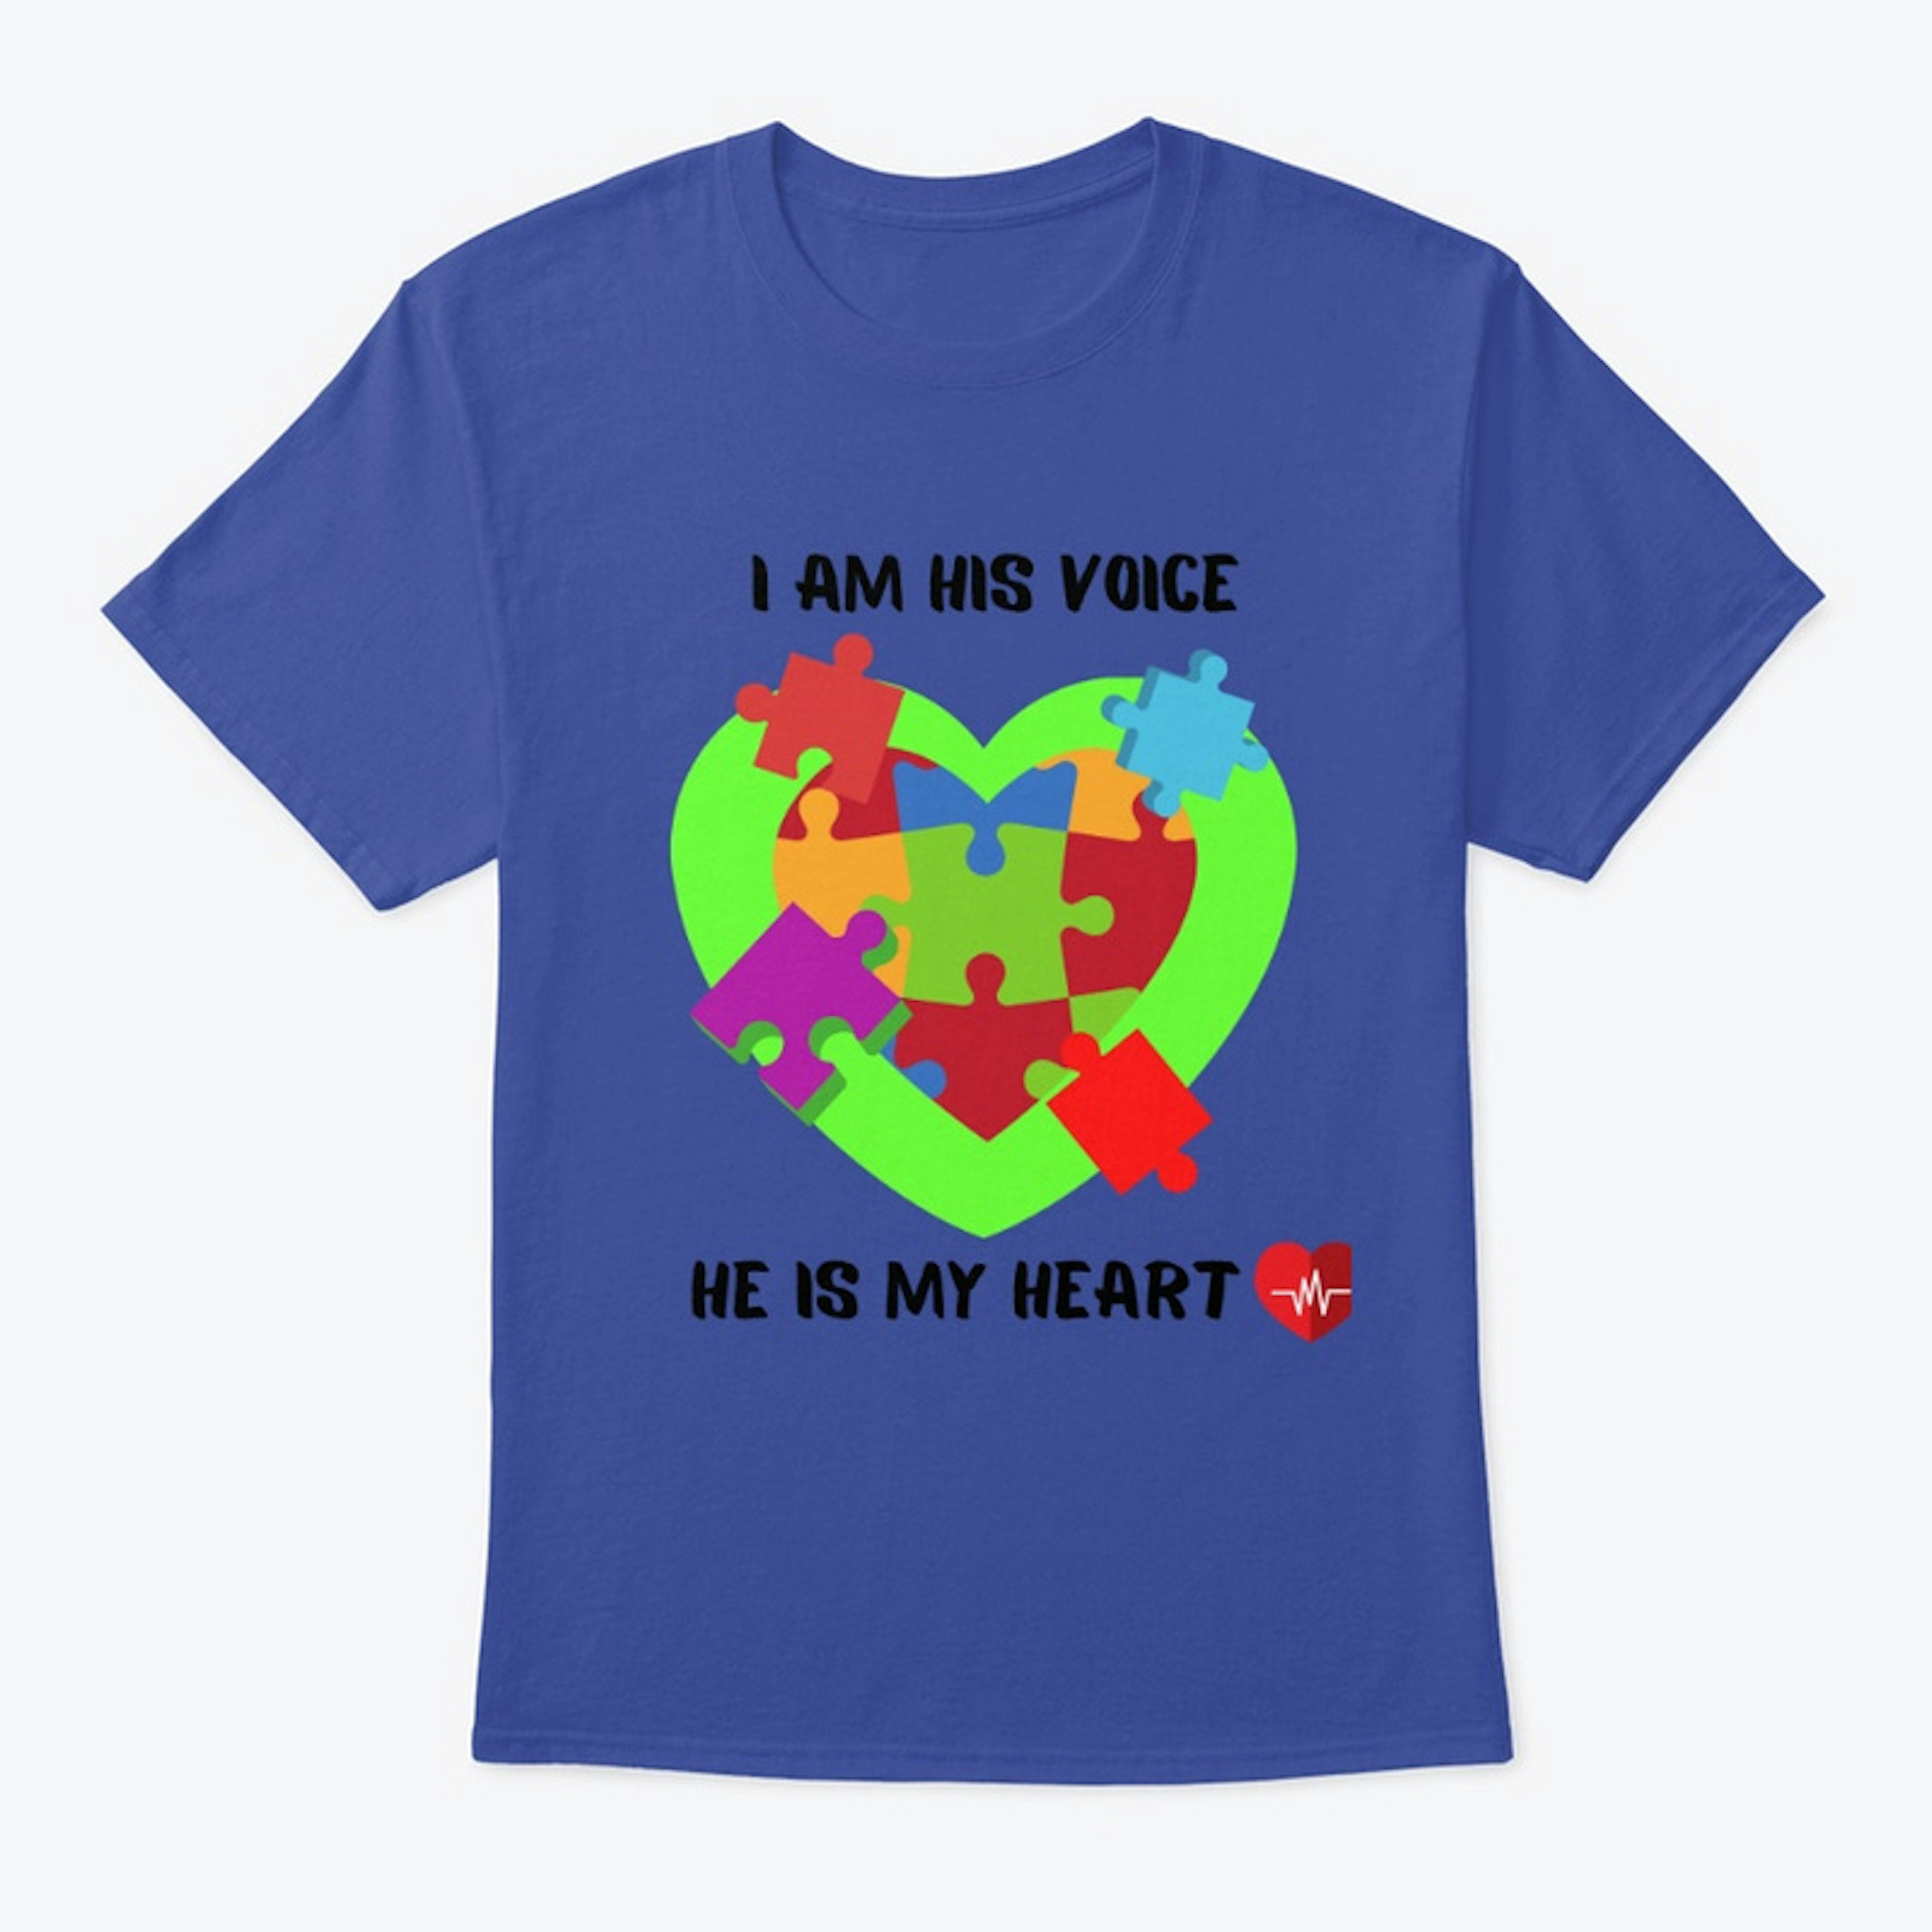 Autism Awareness Shirt (I am his Voice)